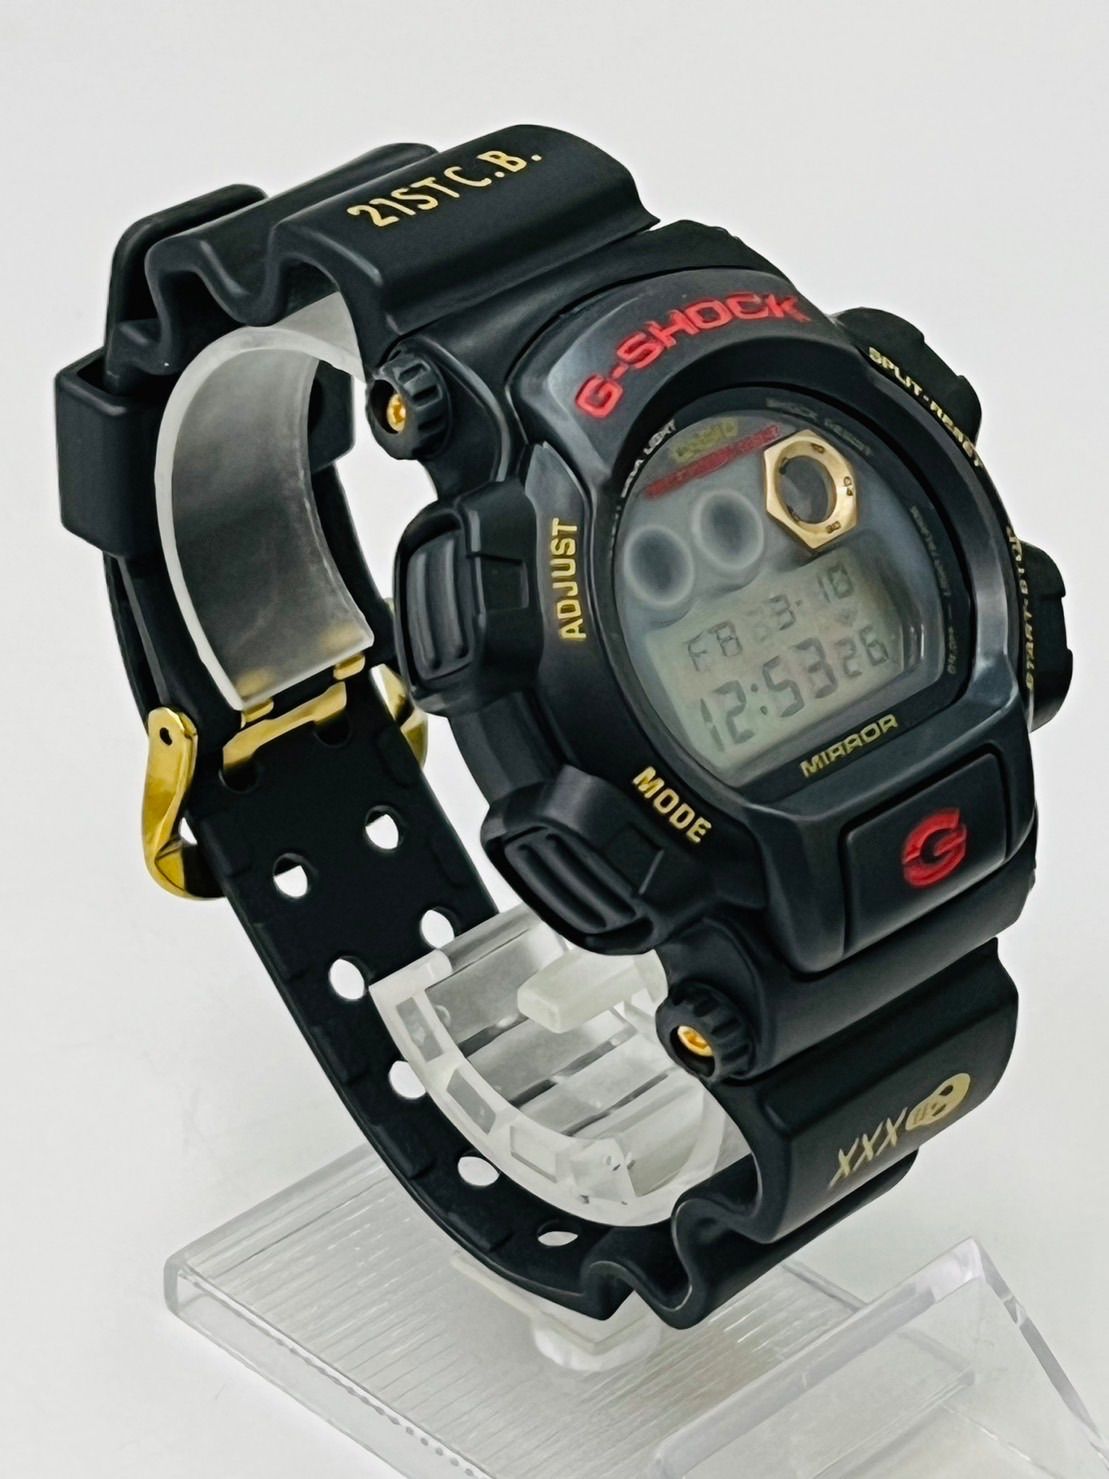 Gショック G-shock ジーショック DW-003 腕時計 - 7